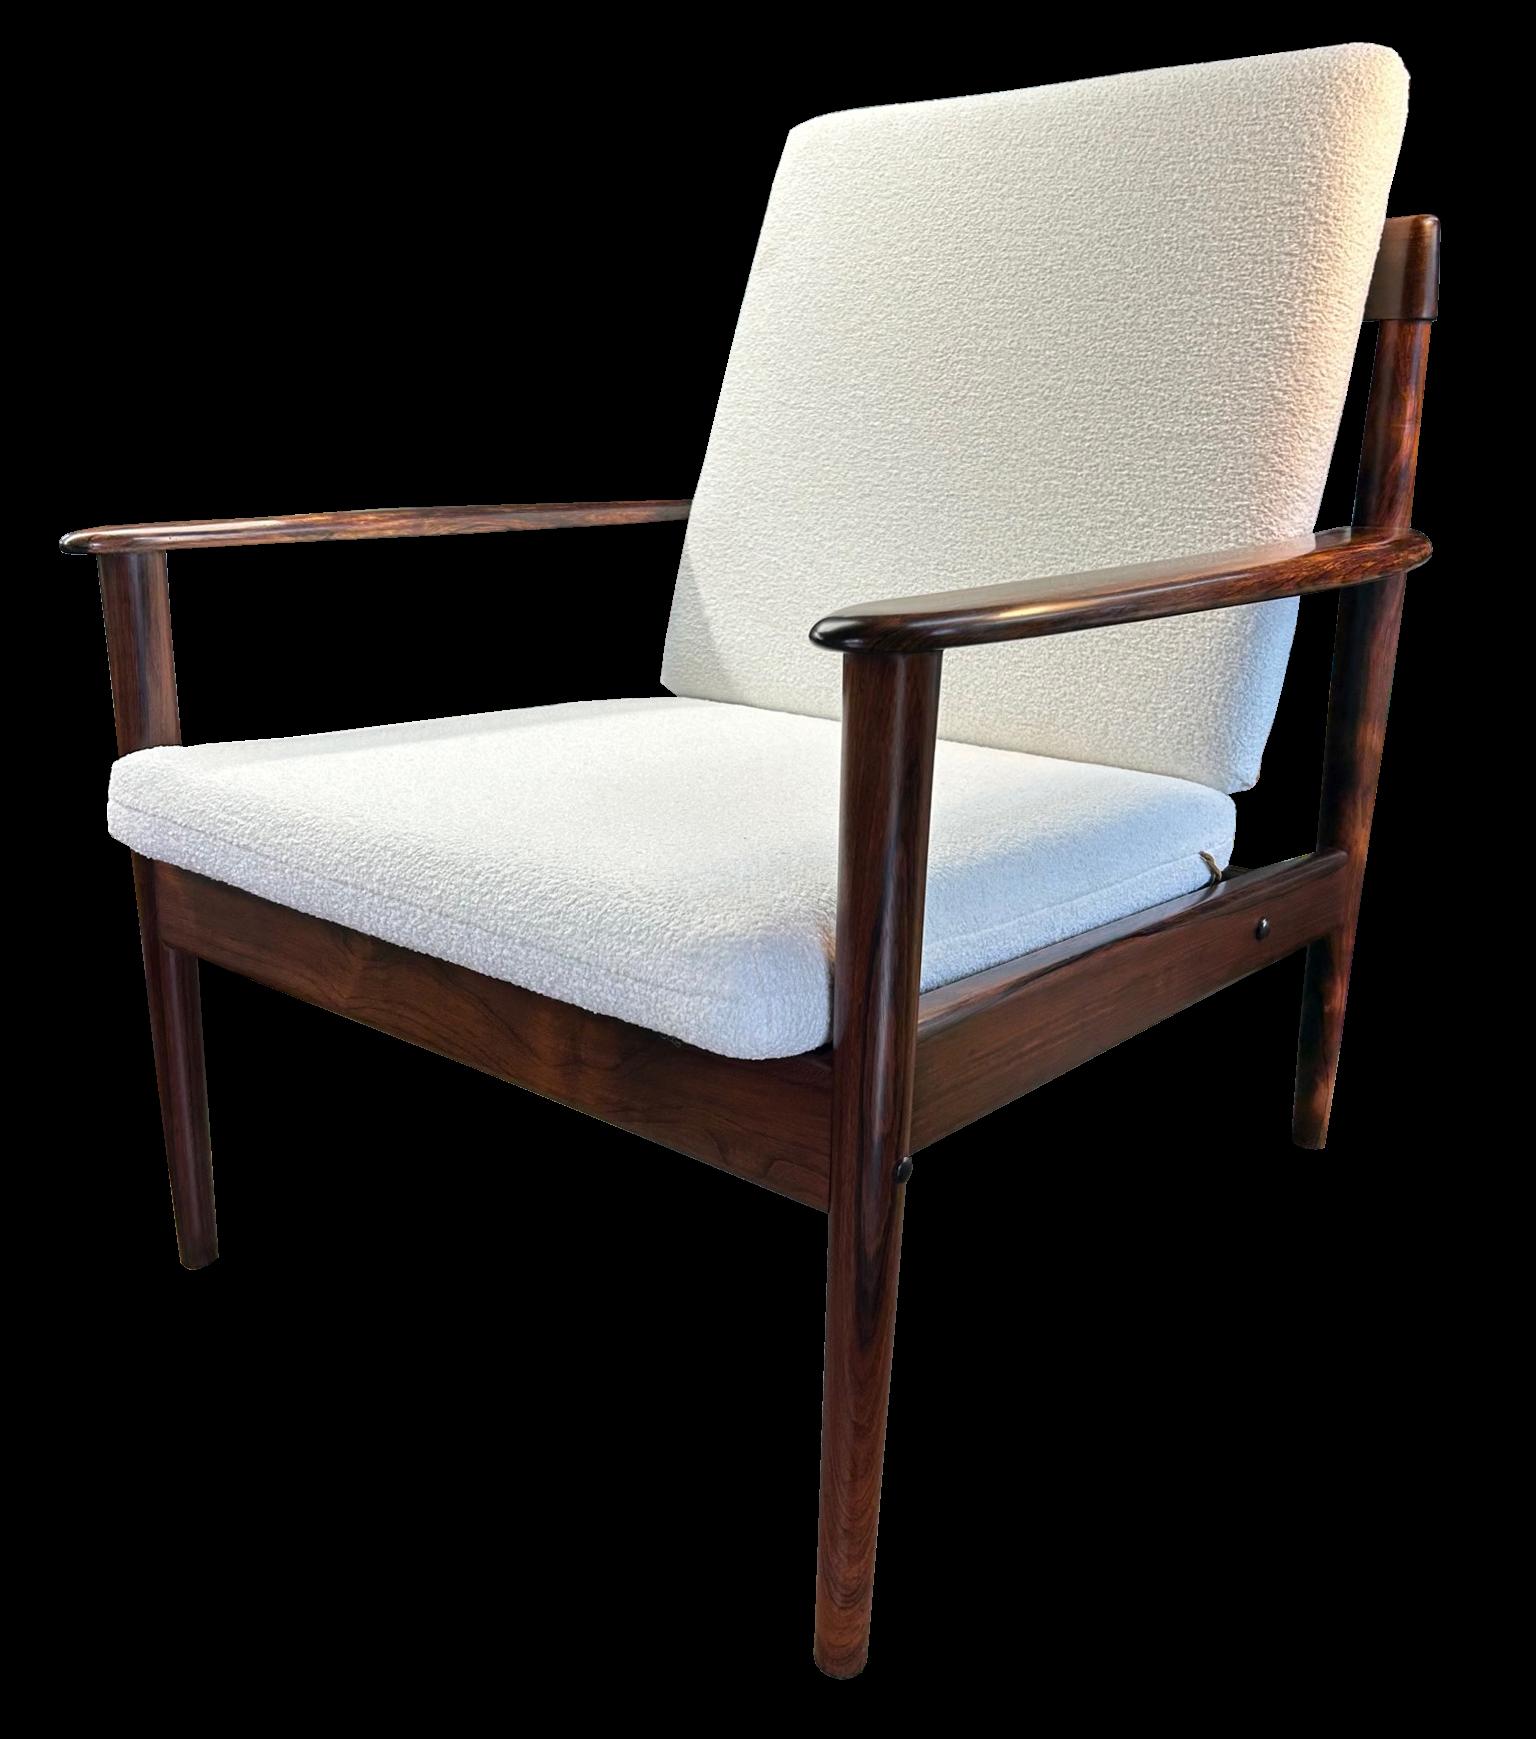 Un très bon exemple de cette chaise de salon de haute qualité par Grete Jalk pour Poul Jeppesen, en palissandre de Santos massif finement marqué, ou Machaerium Scleroxylon, un bois durable, donc pas de problème pour l'import/export.
Les coussins ont